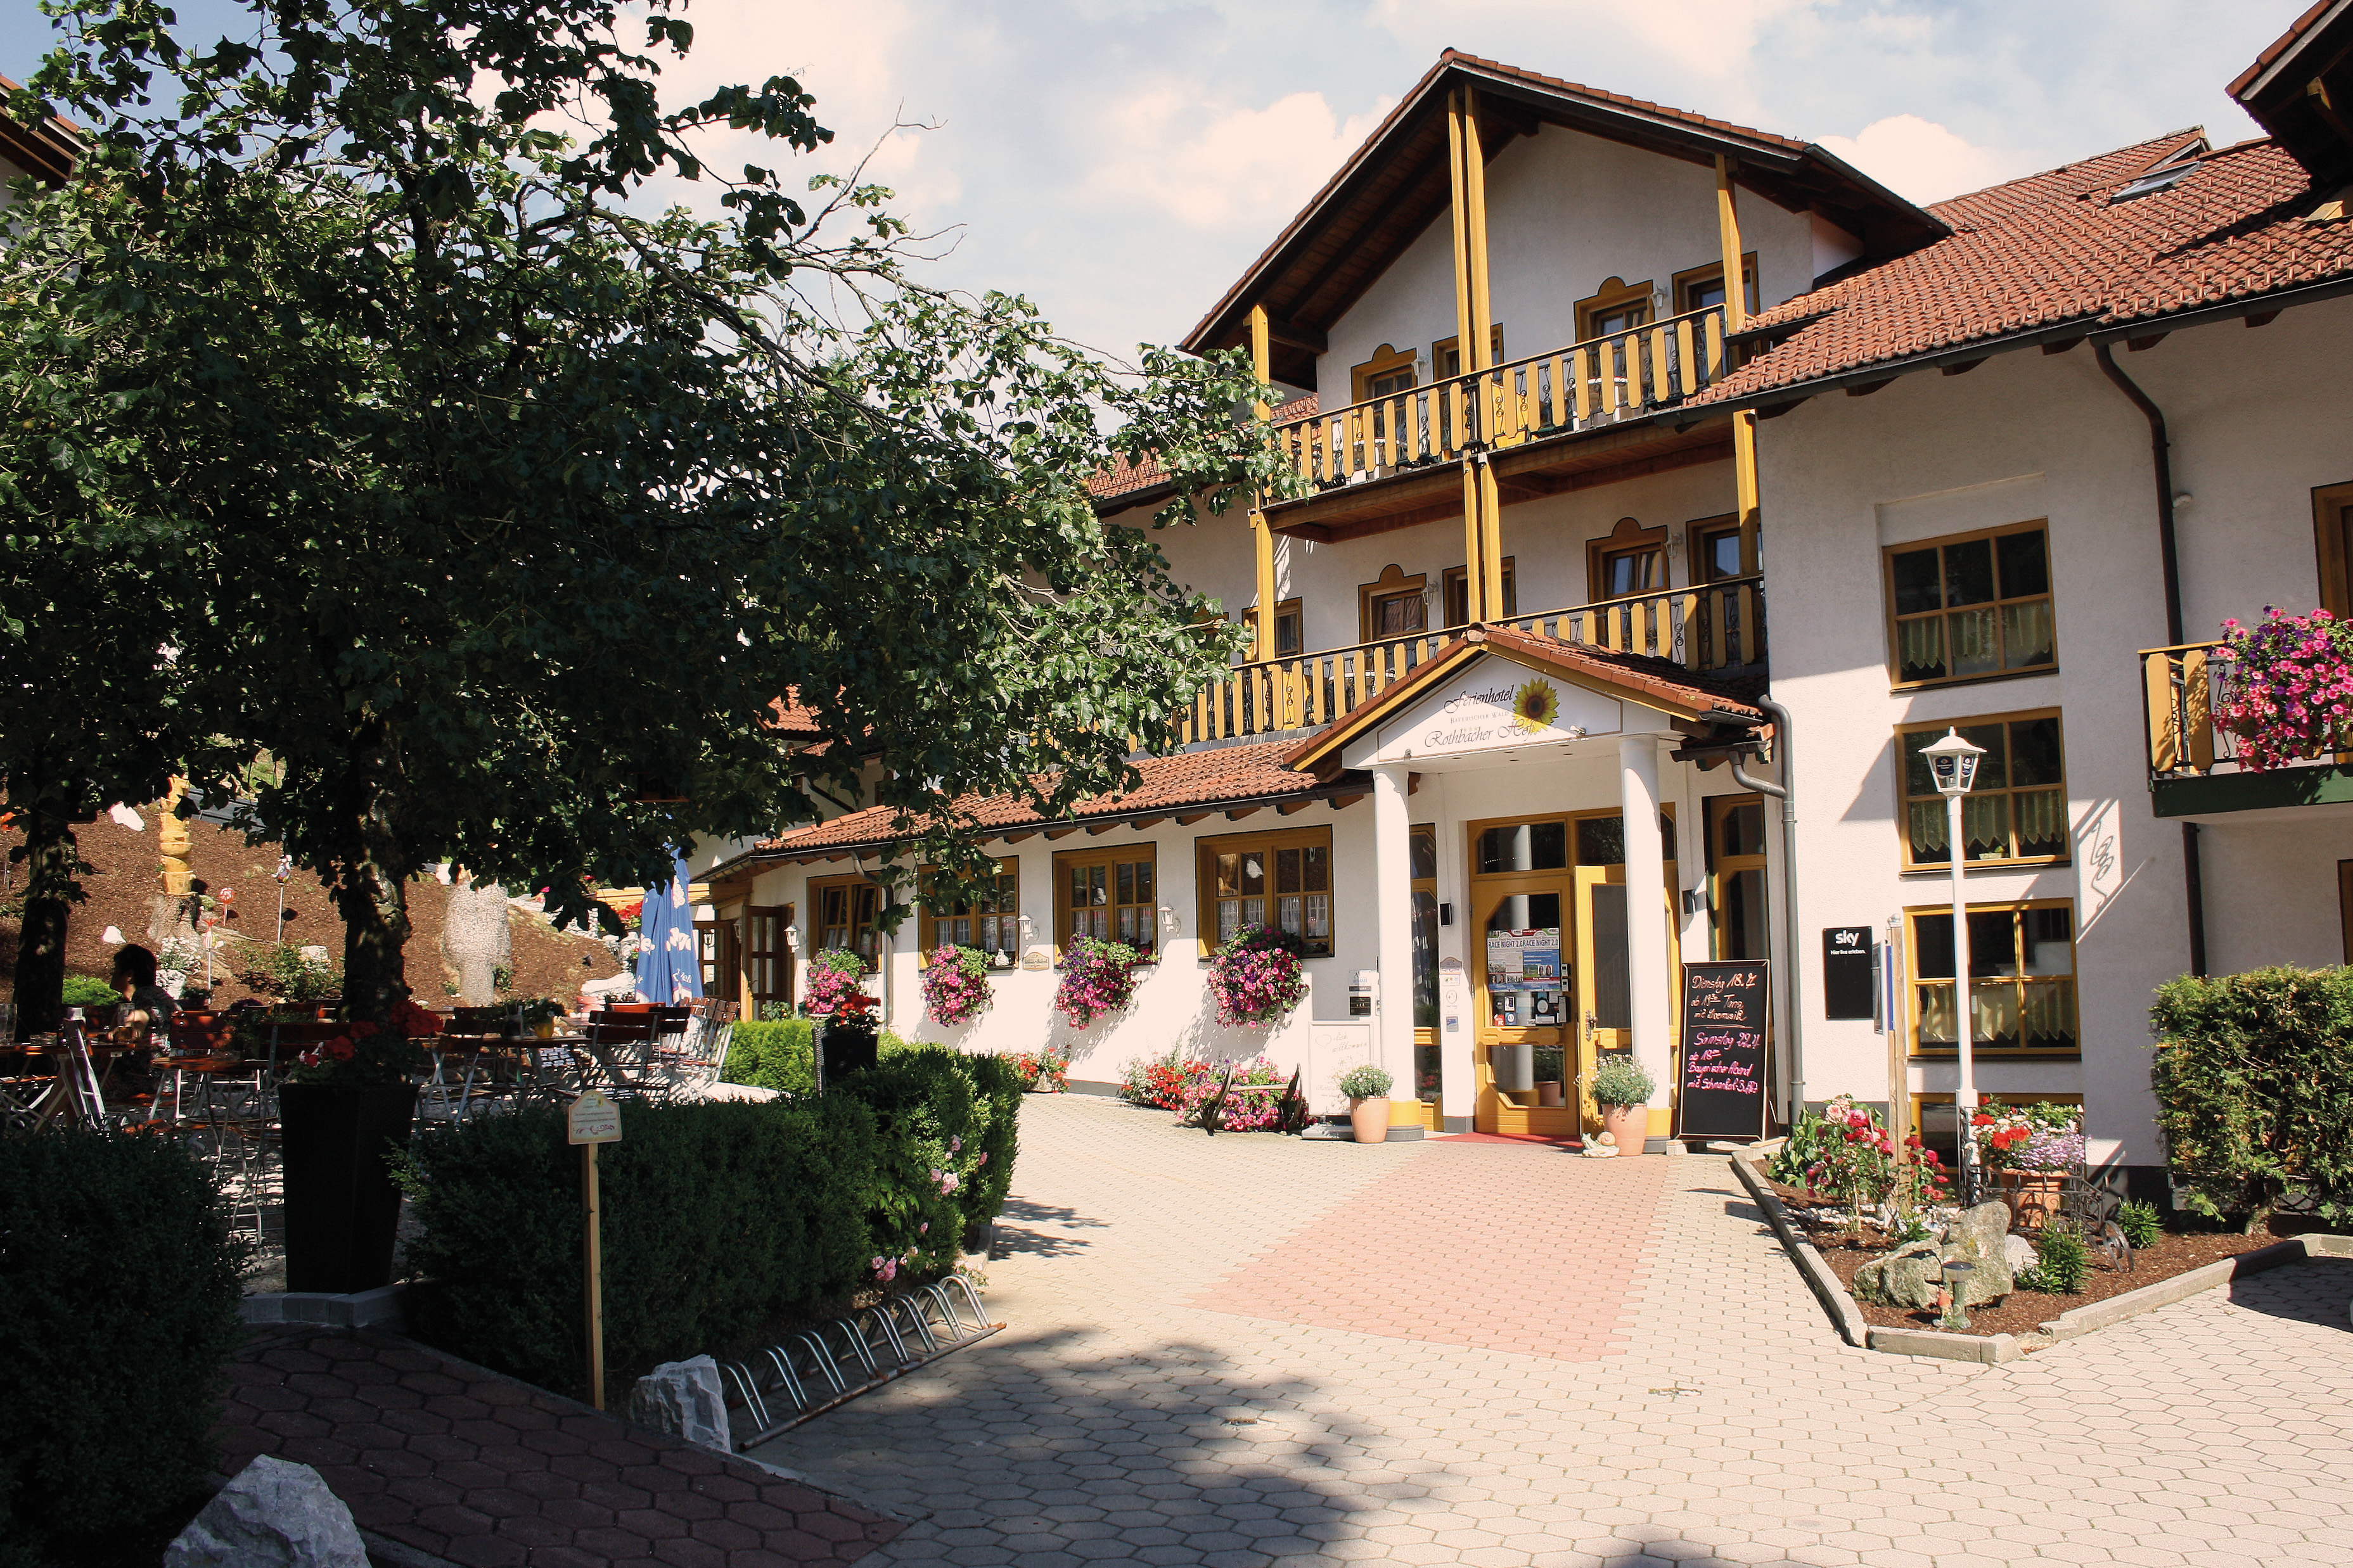 Wanderschuh - 4 Tage/ 3 Übernachtungen für 2 Personen im Ferienhotel Rothbacher Hof